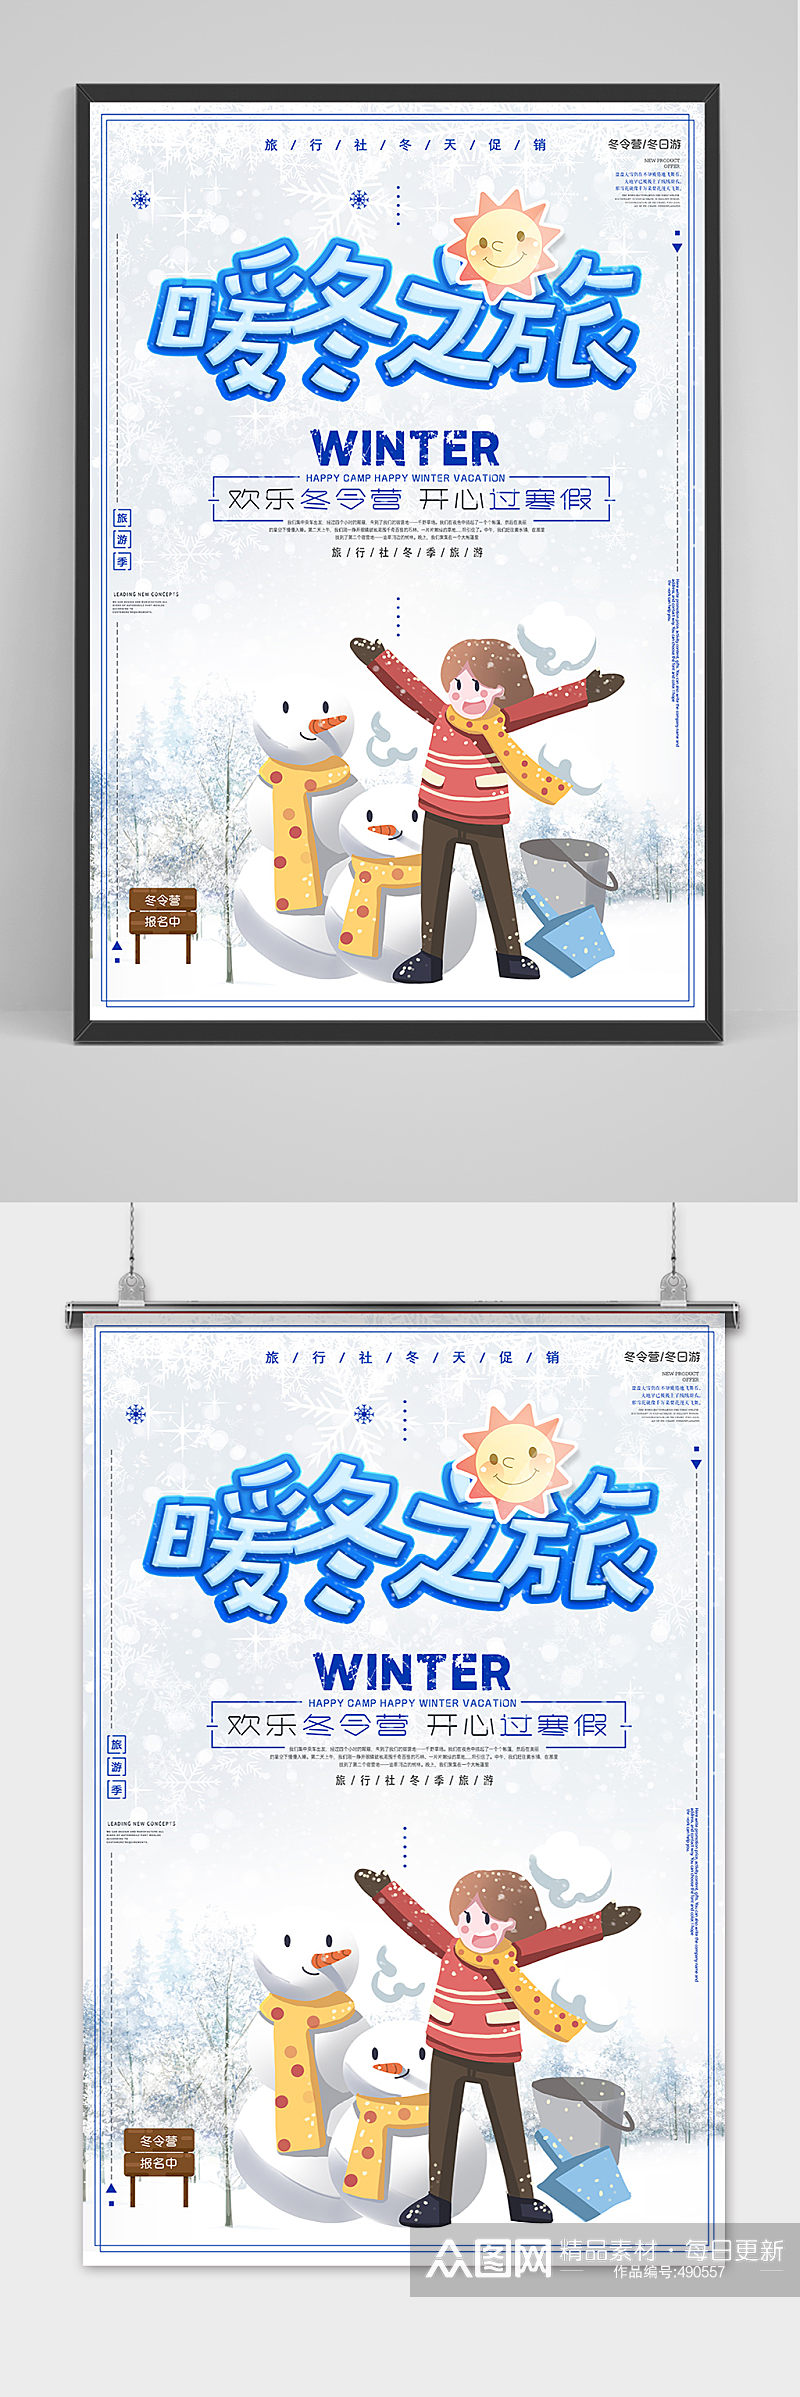 暖冬之旅冬季旅游海报设计素材